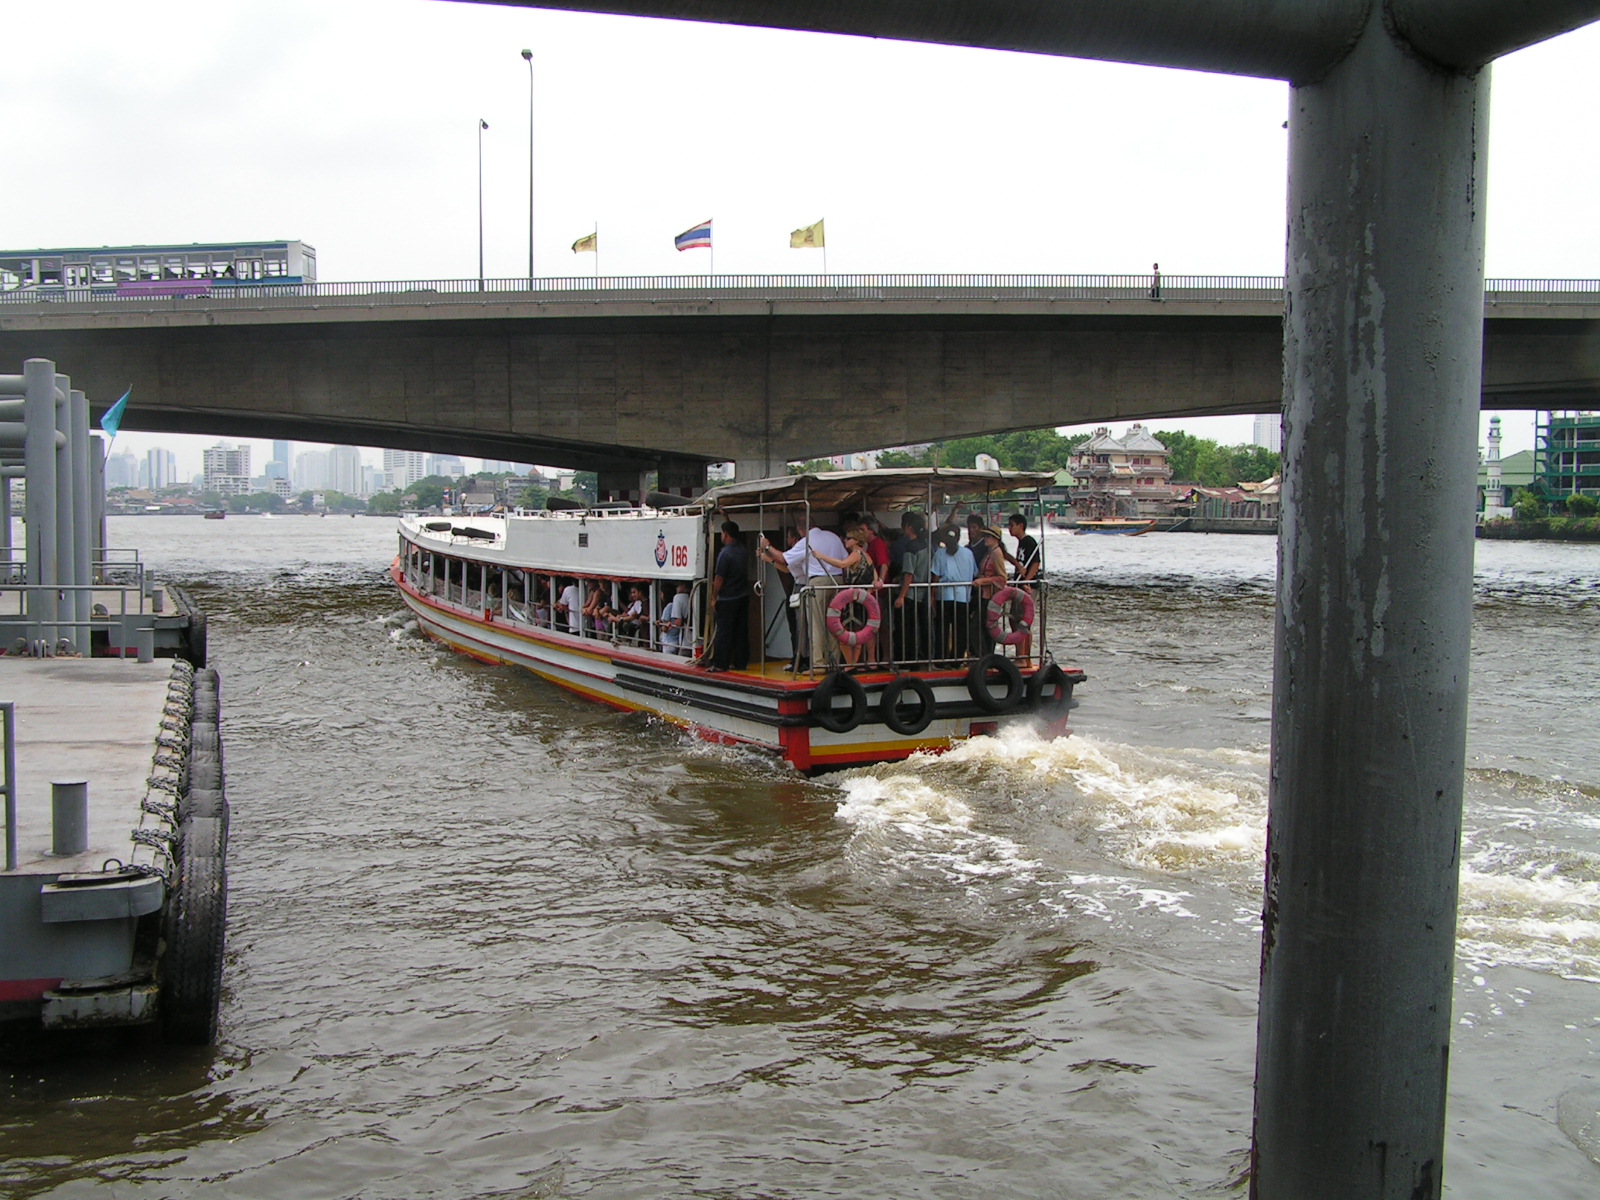 Речной общественный транспорт. Речной трамвай Бангкок. Речной автобус. Речной порт Бангкоке. Речная маршрутка.